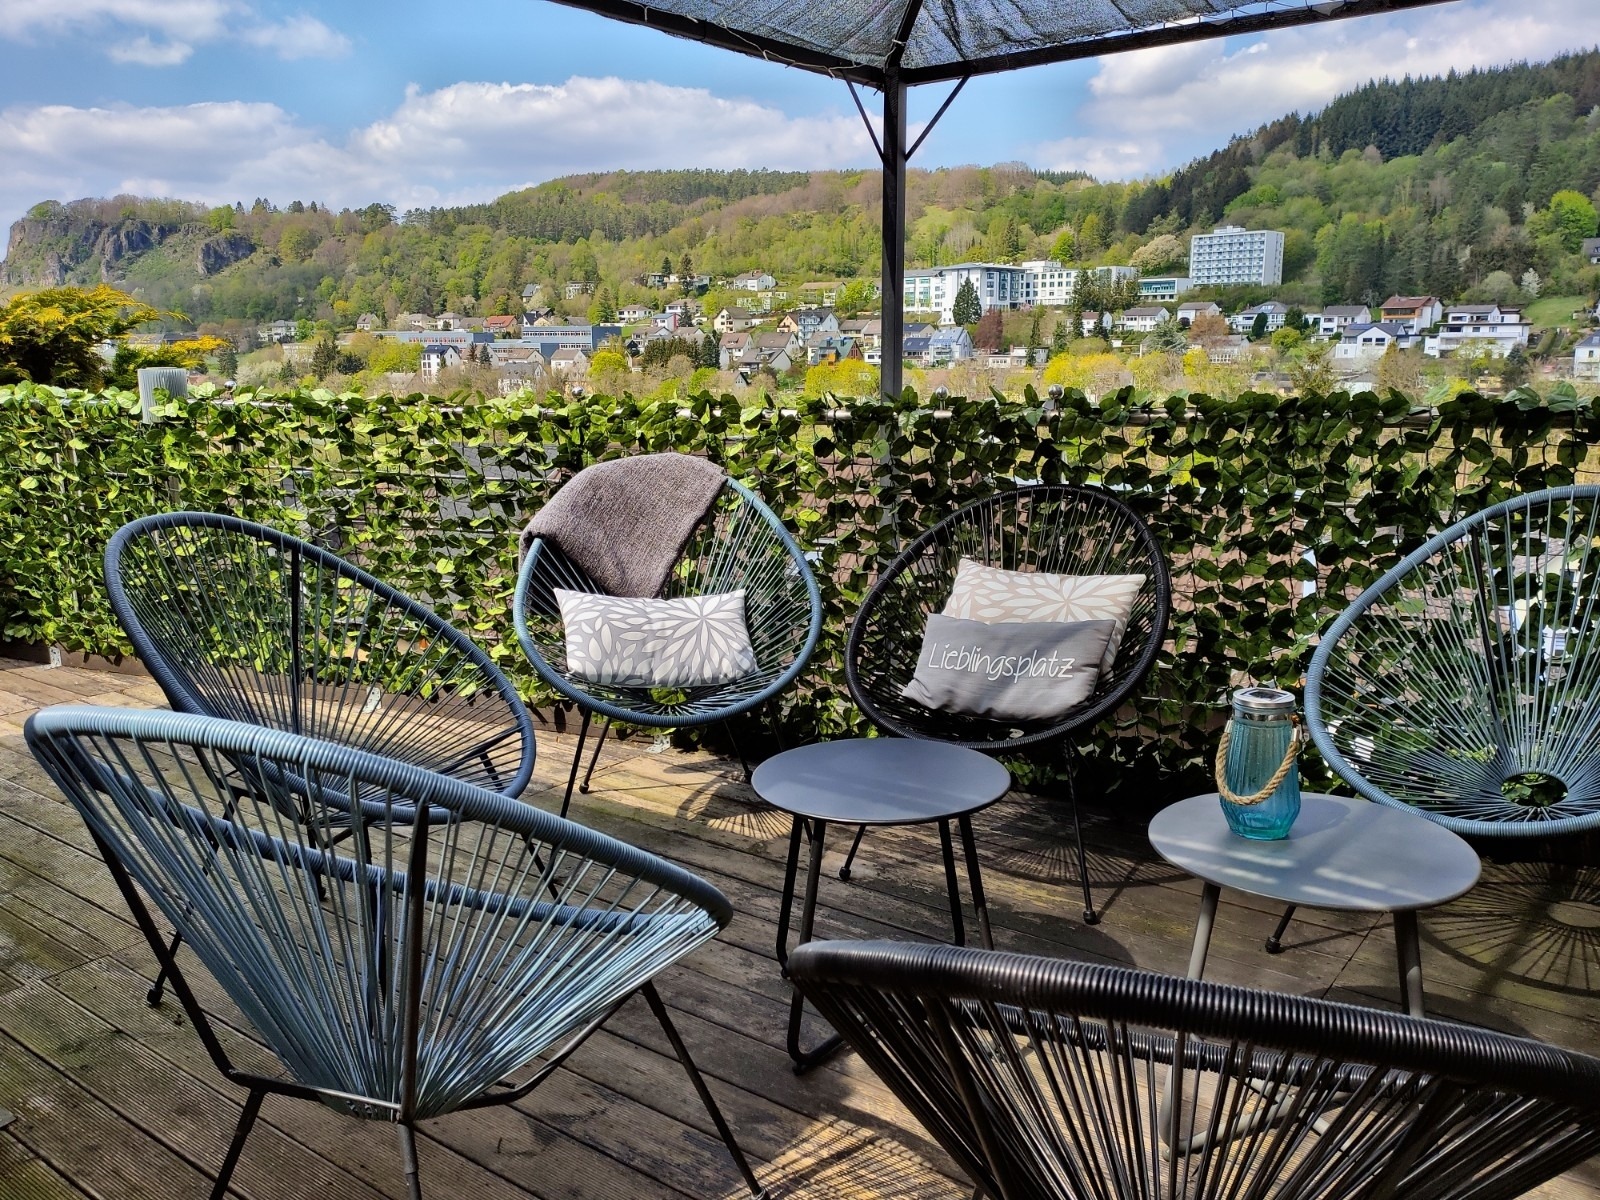 Ferienhaus Panorama Gerolstein mit Garten, Grill & Ferienhaus in der Eifel